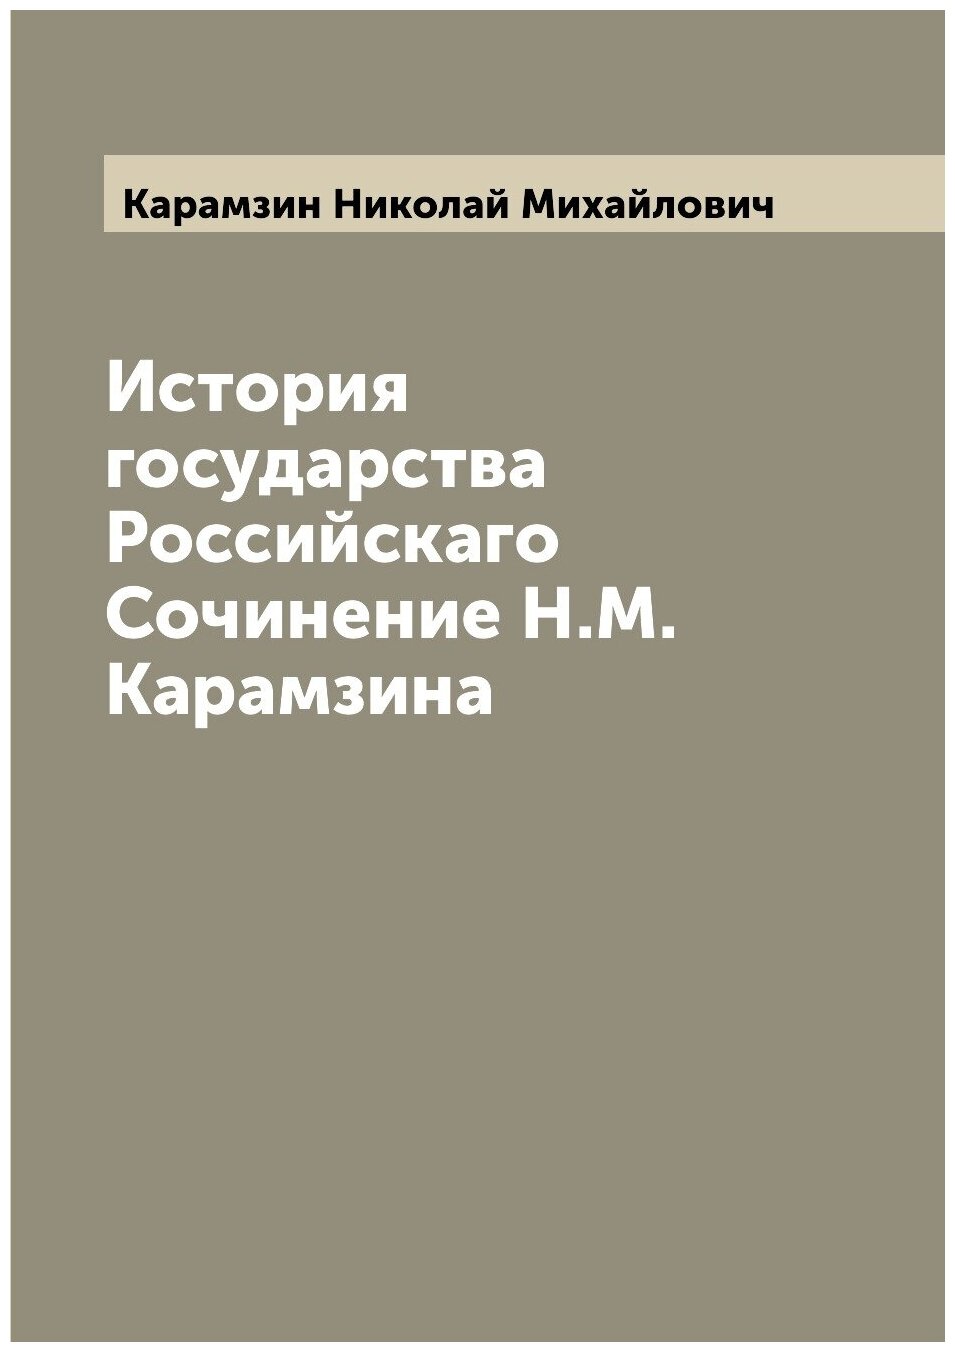 История государства Российскаго Сочинение Н. М. Карамзина